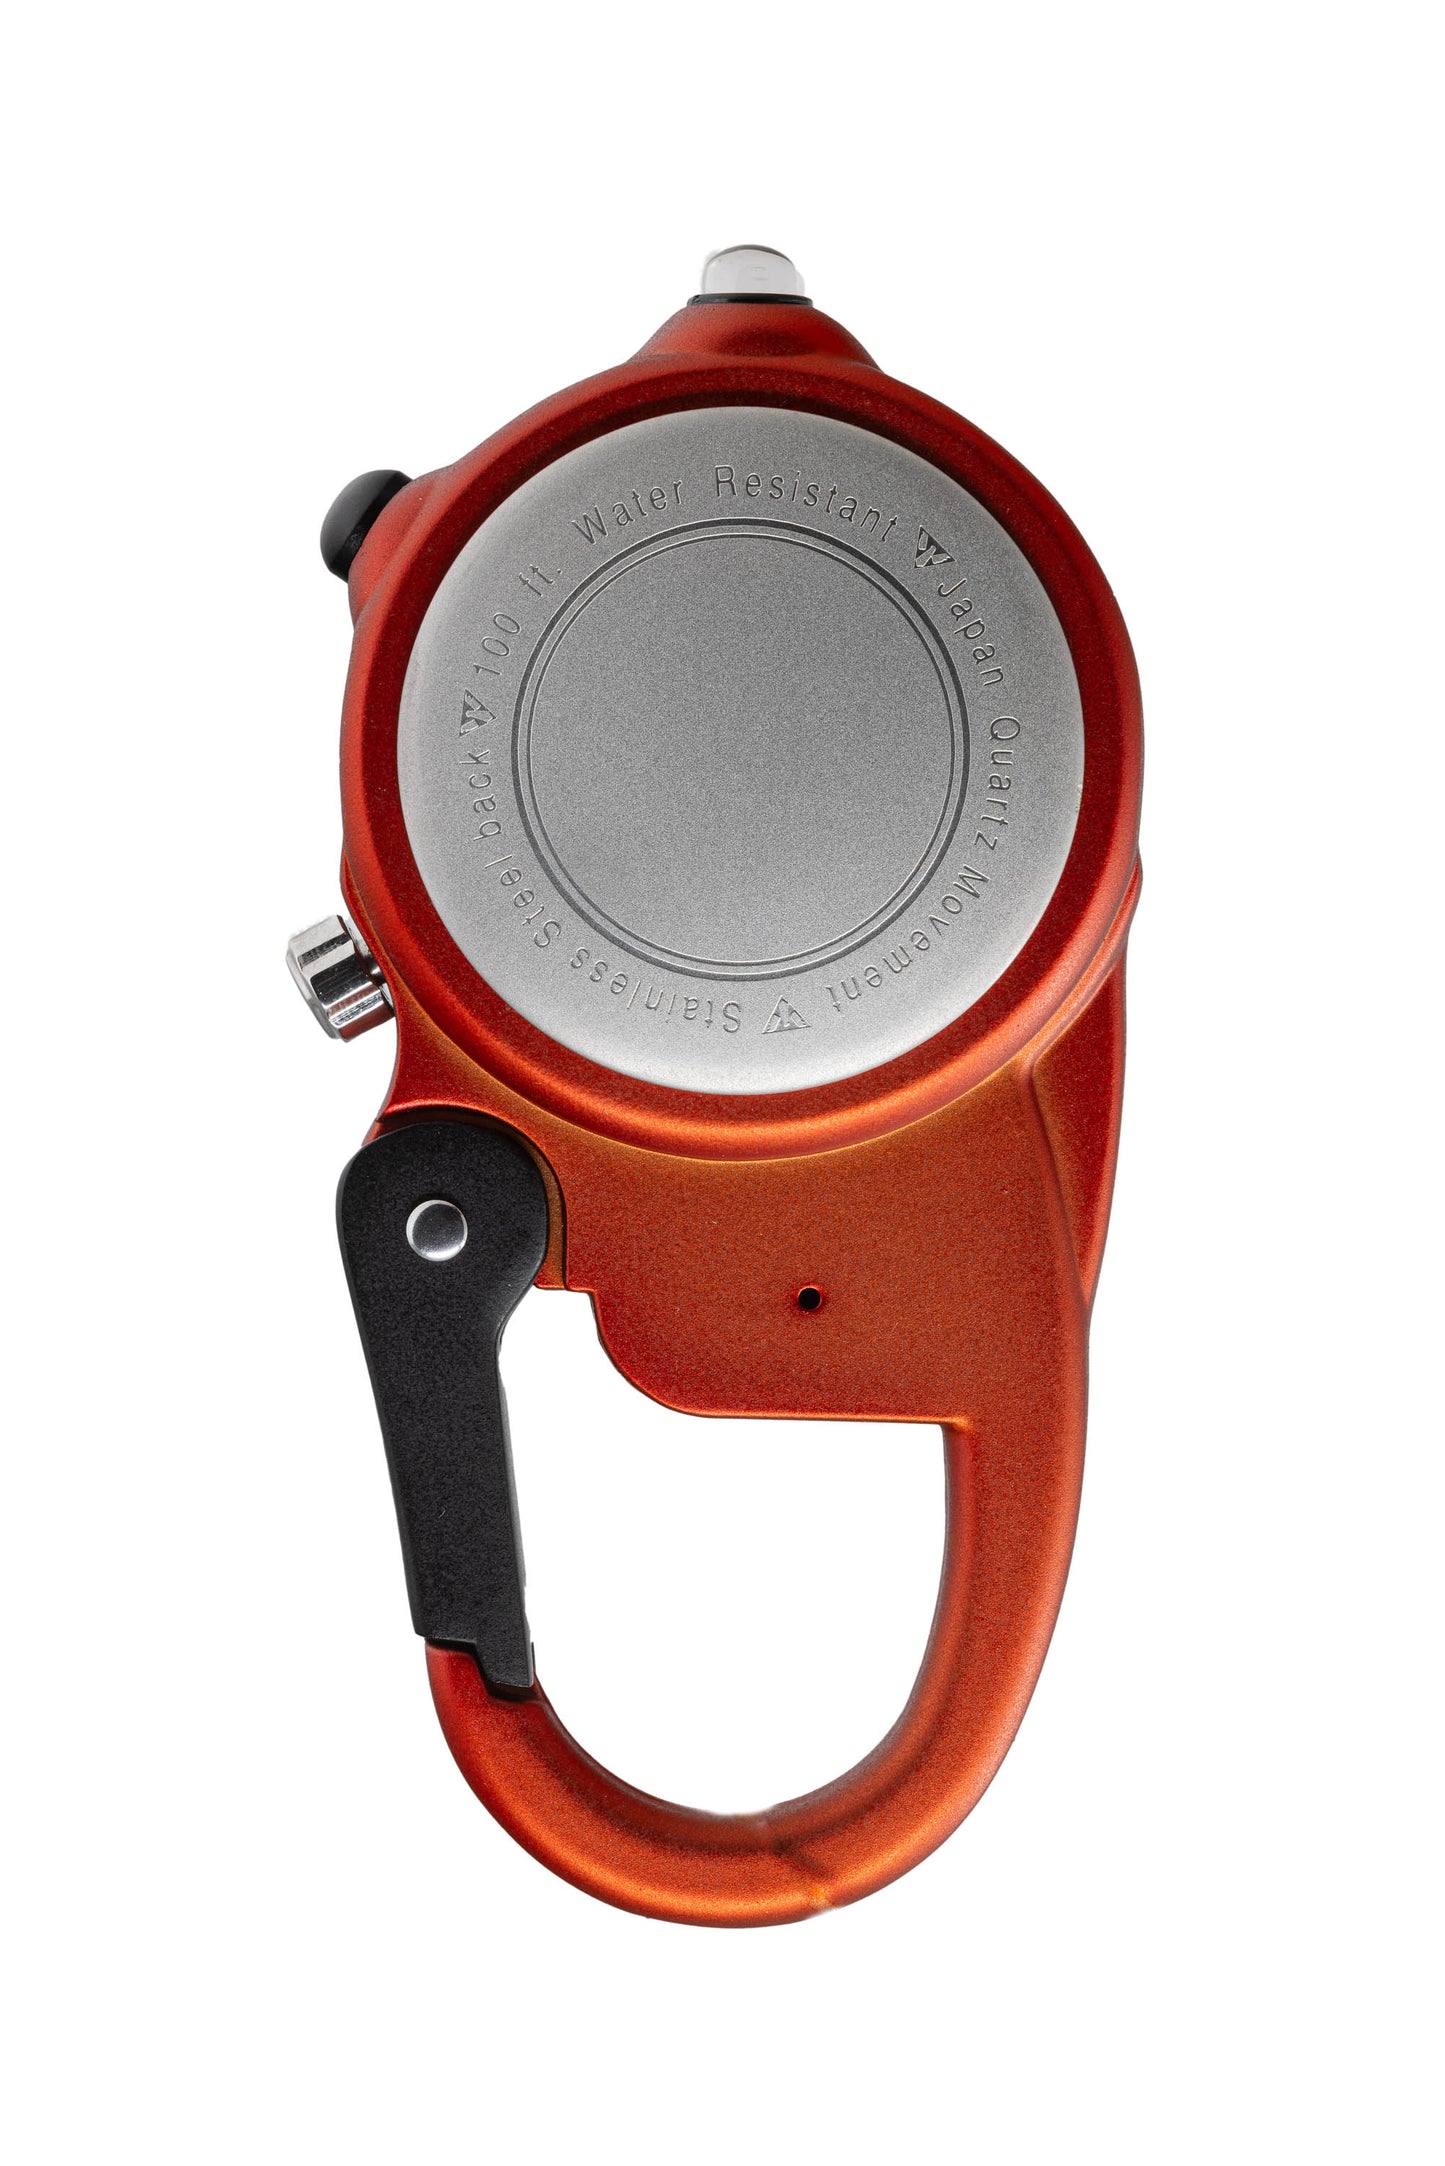 Miniclip Microlight - Orange Case Cream Dial